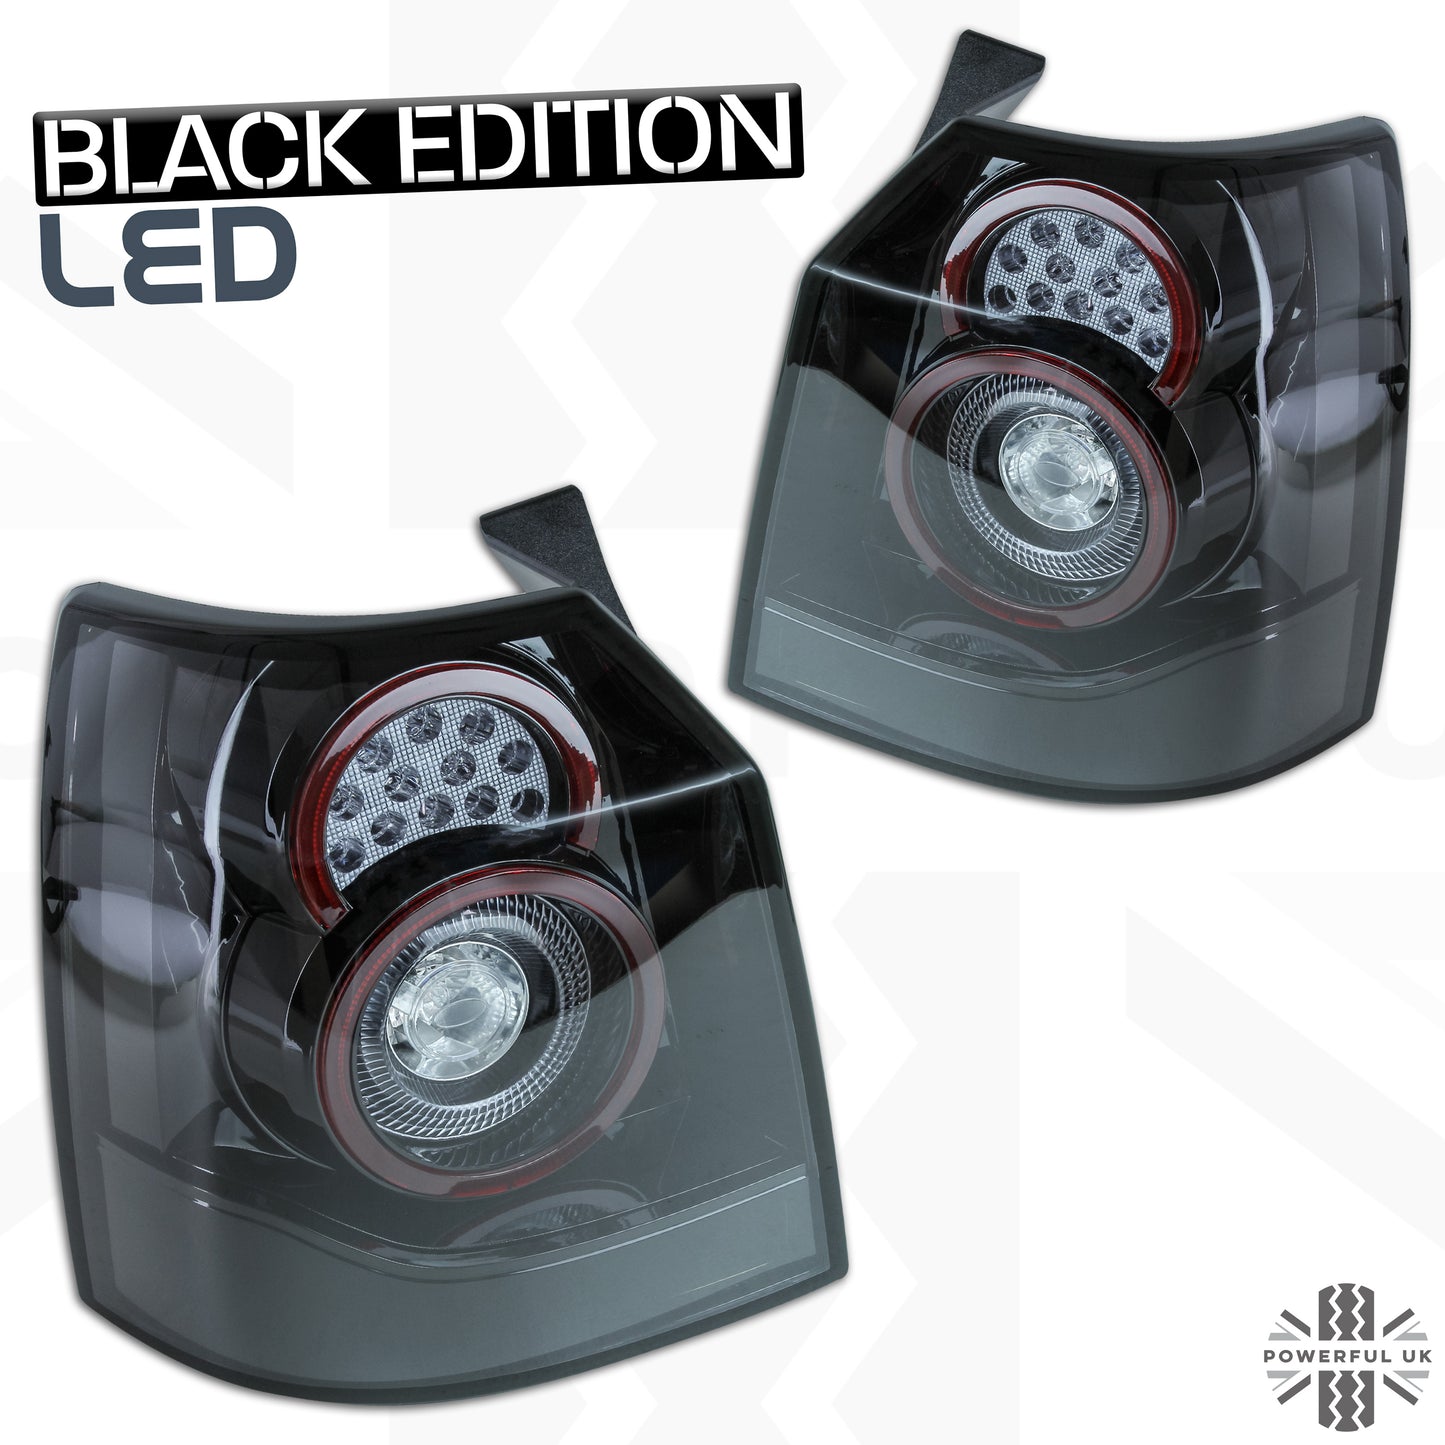 Black LED Rear lights for Land Rover Freelander 2012-14